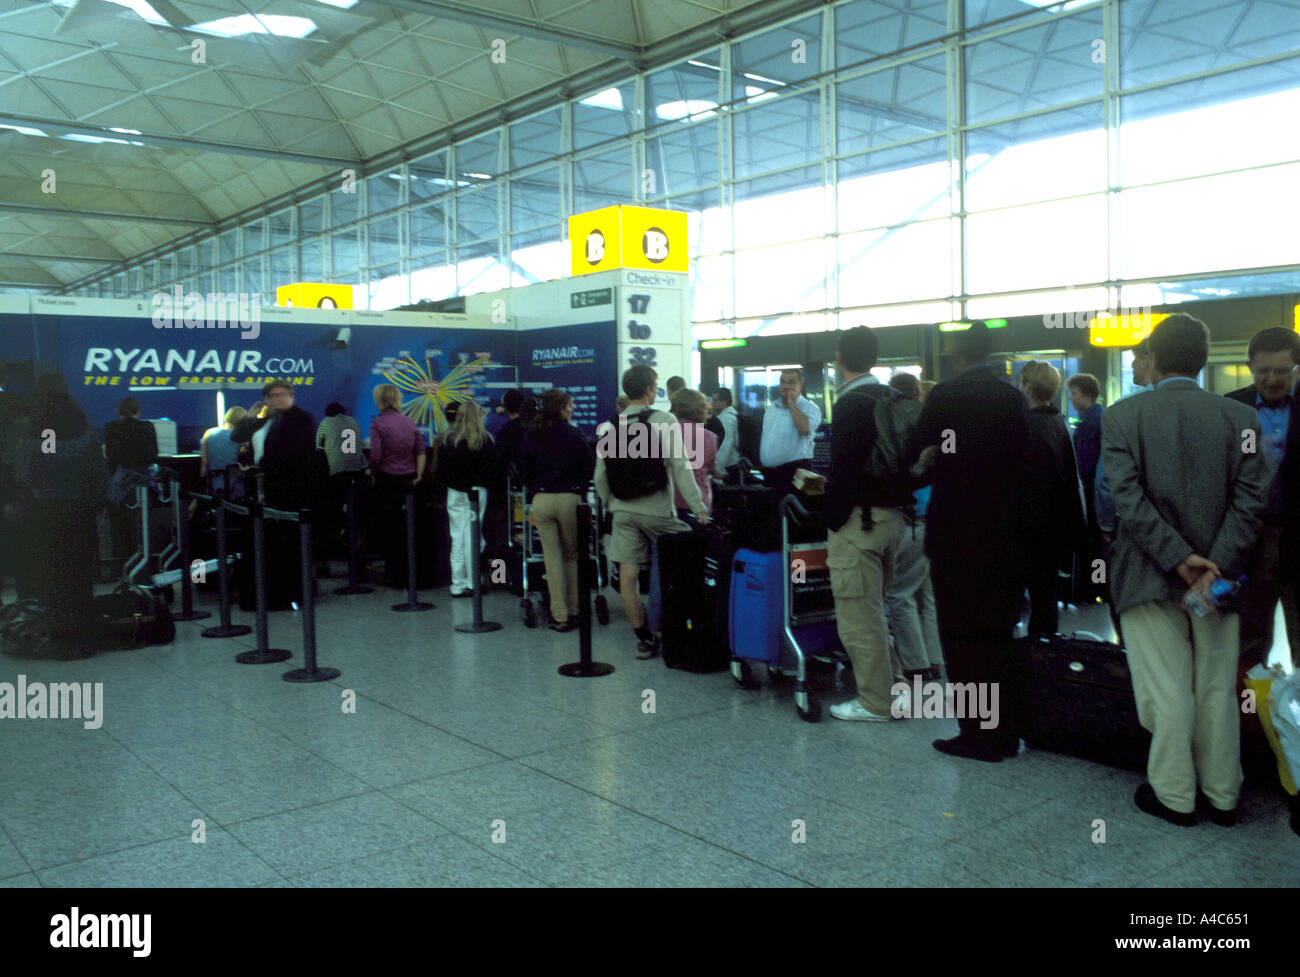 Longue attente dans l'aéroport de Stansted Ryanair UK Banque D'Images